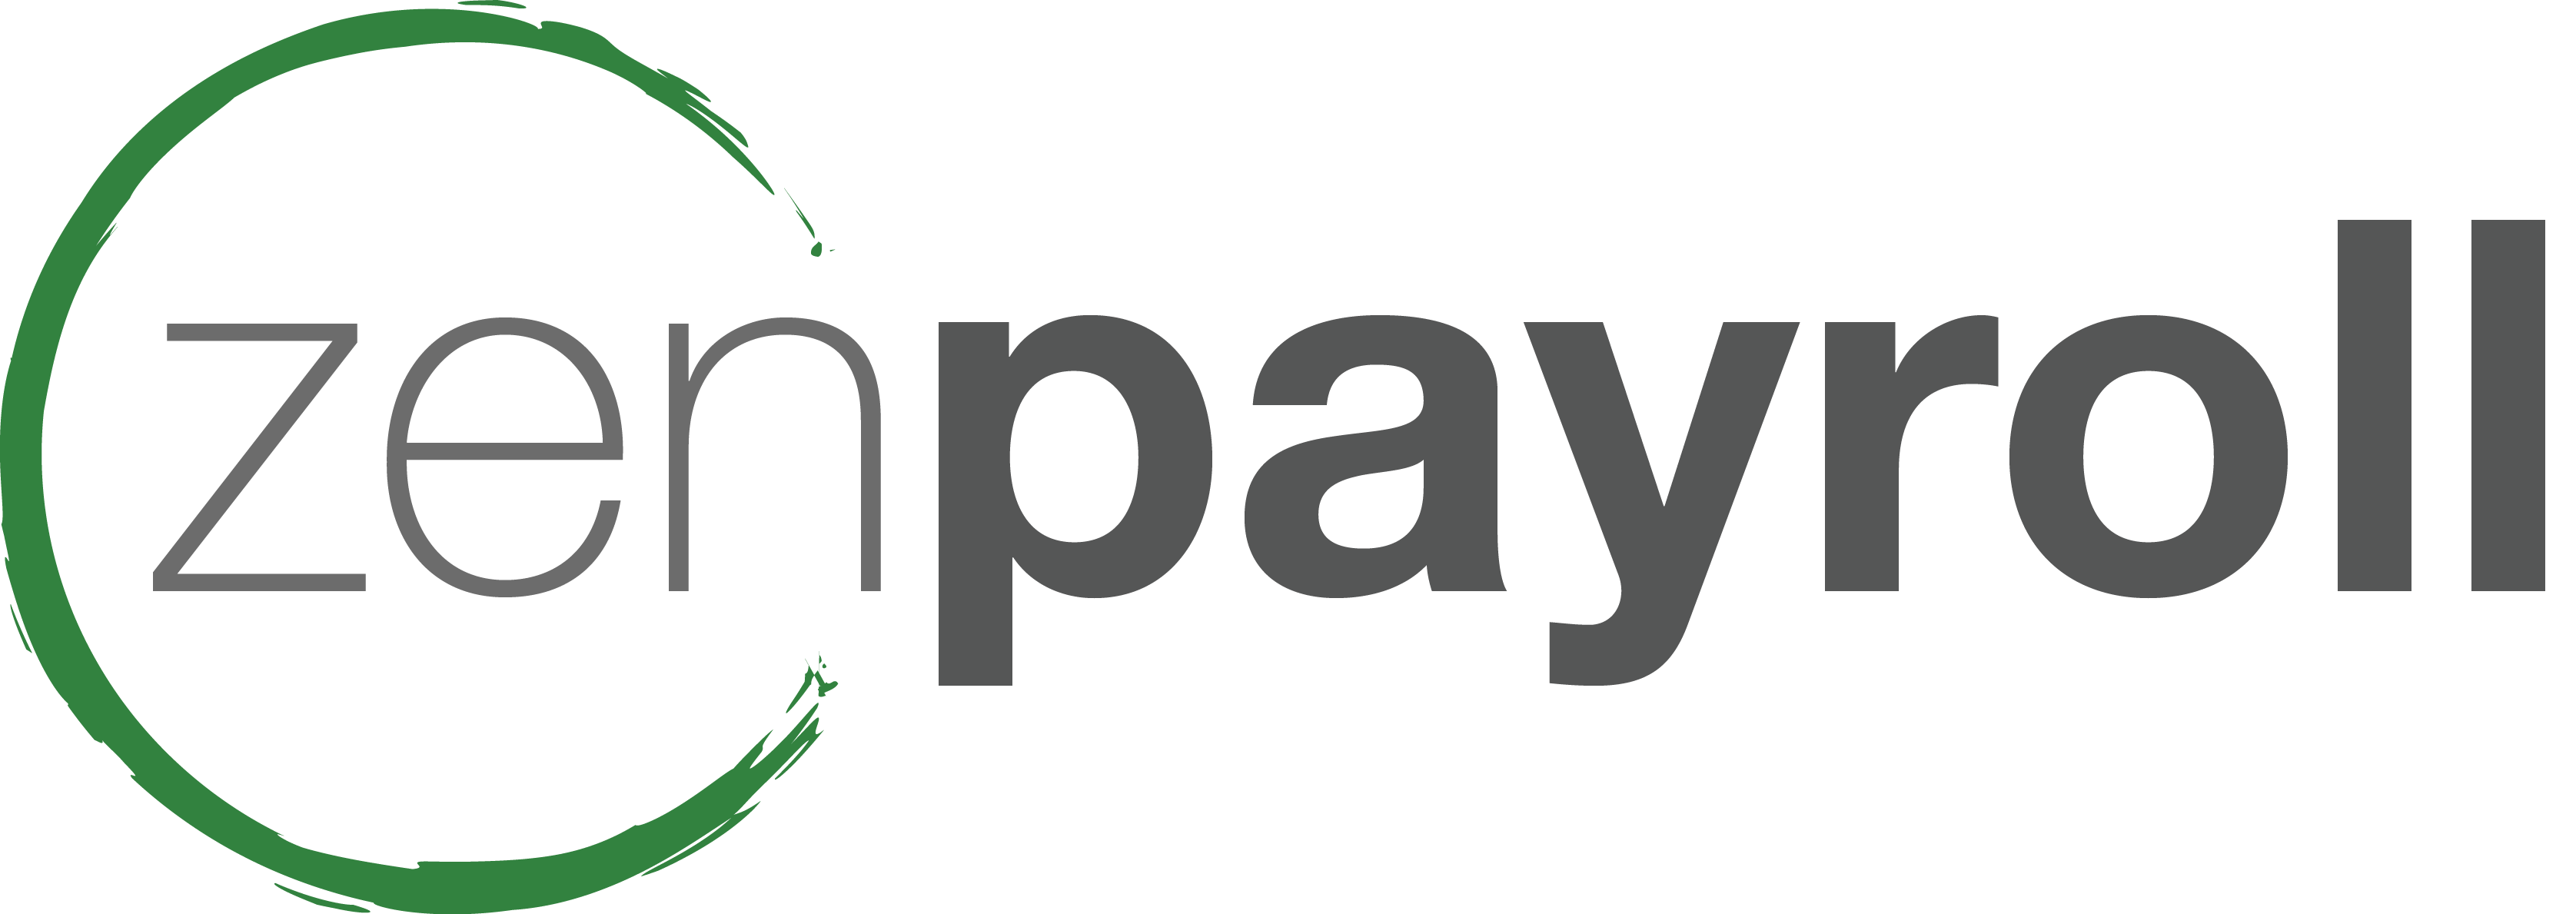 Payroll Logo - zenpayroll logo - Benefits Assure LLC